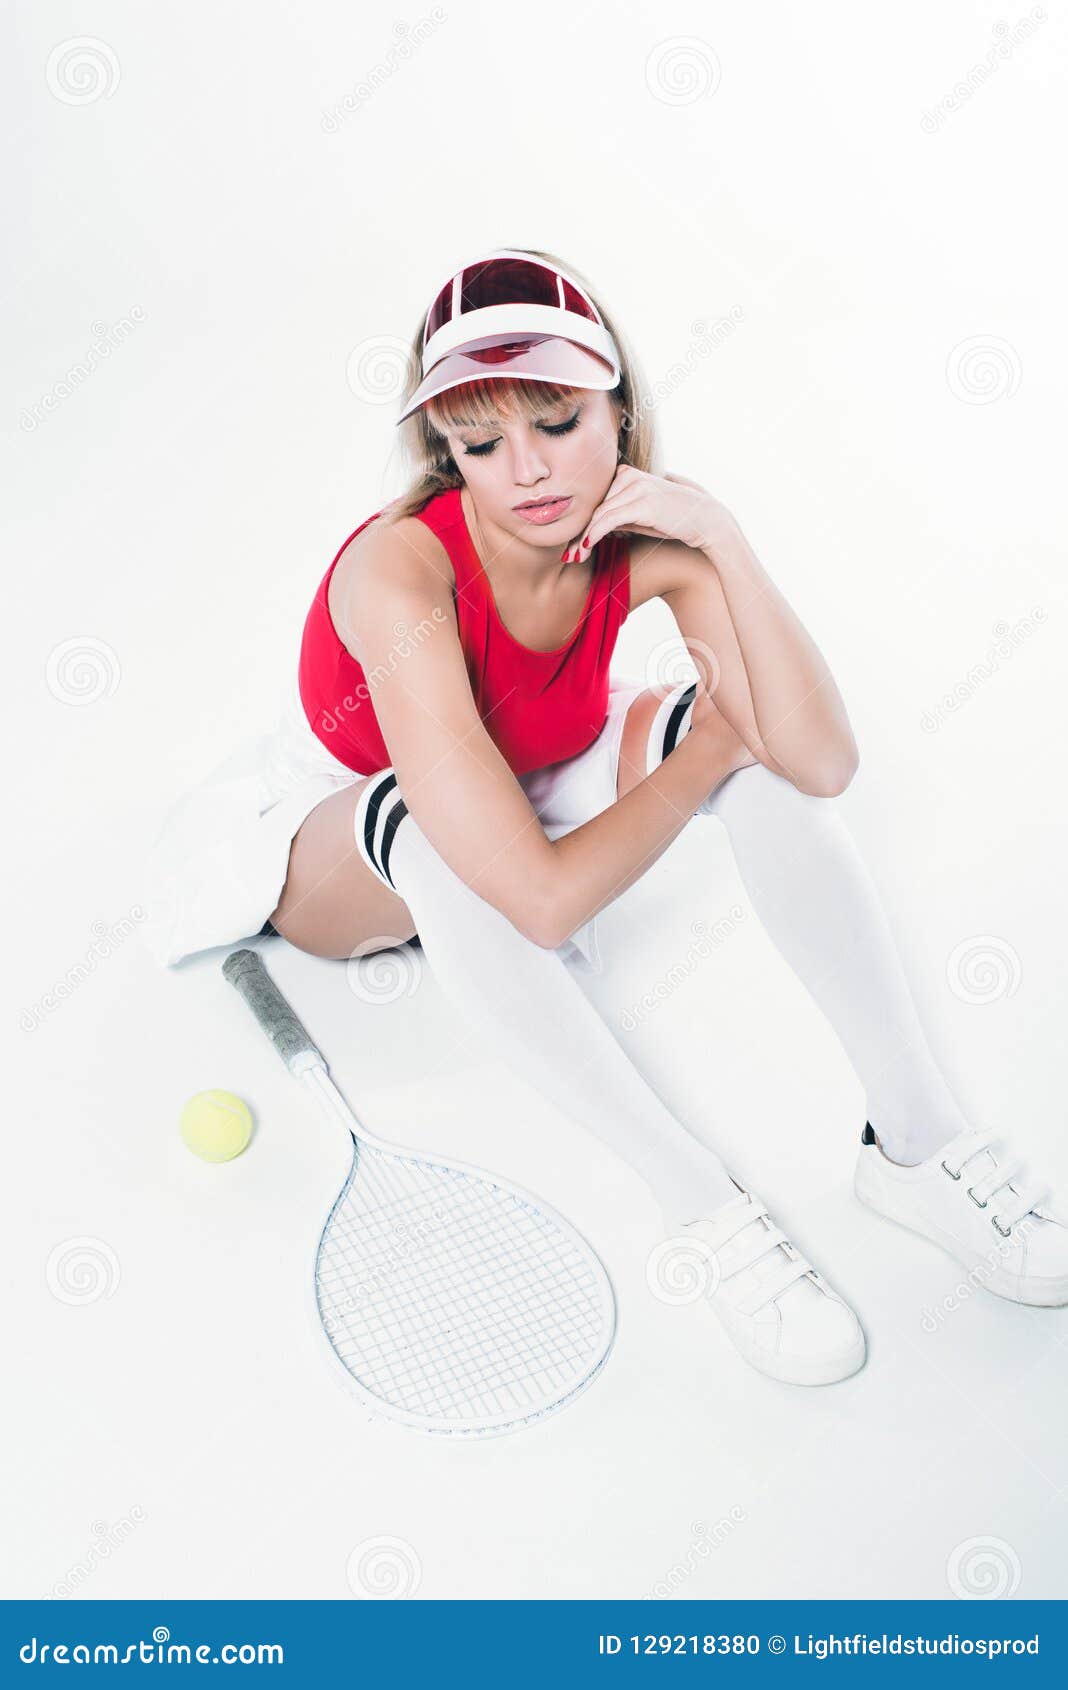 Mujer Moda Pensativa En Ropa De Deportes Con El Equipo Del Tenis Foto de archivo - Imagen de ropas, juego: 129218380